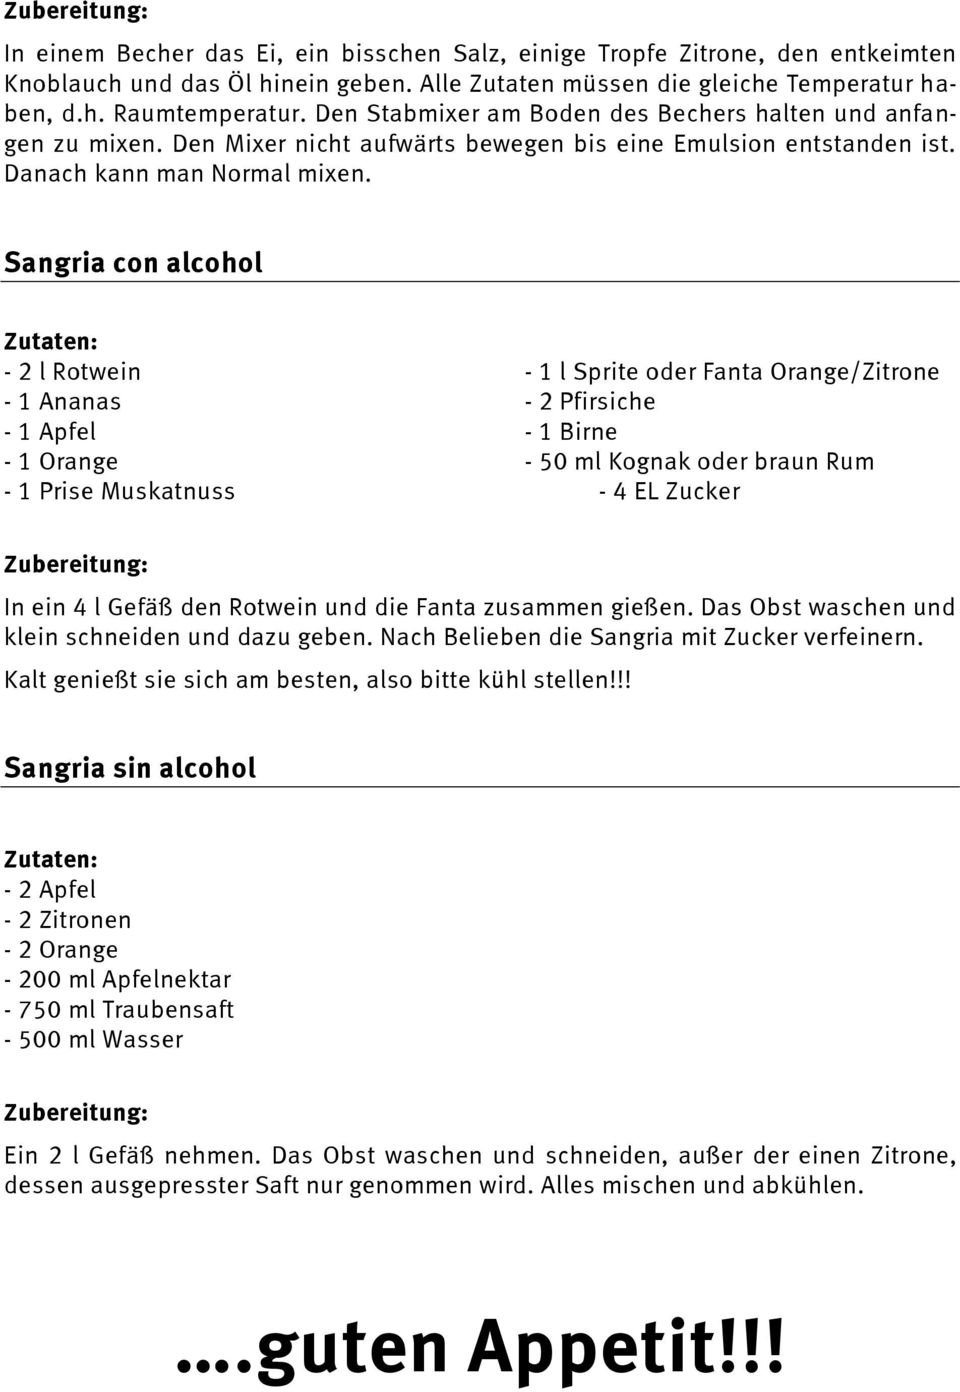 Sangria con alcohol - 2 l Rotwein - 1 l Sprite oder Fanta Orange/Zitrone - 1 Ananas - 2 Pfirsiche - 1 Apfel - 1 Birne - 1 Orange - 50 ml Kognak oder braun Rum - 1 Prise Muskatnuss - 4 EL Zucker In